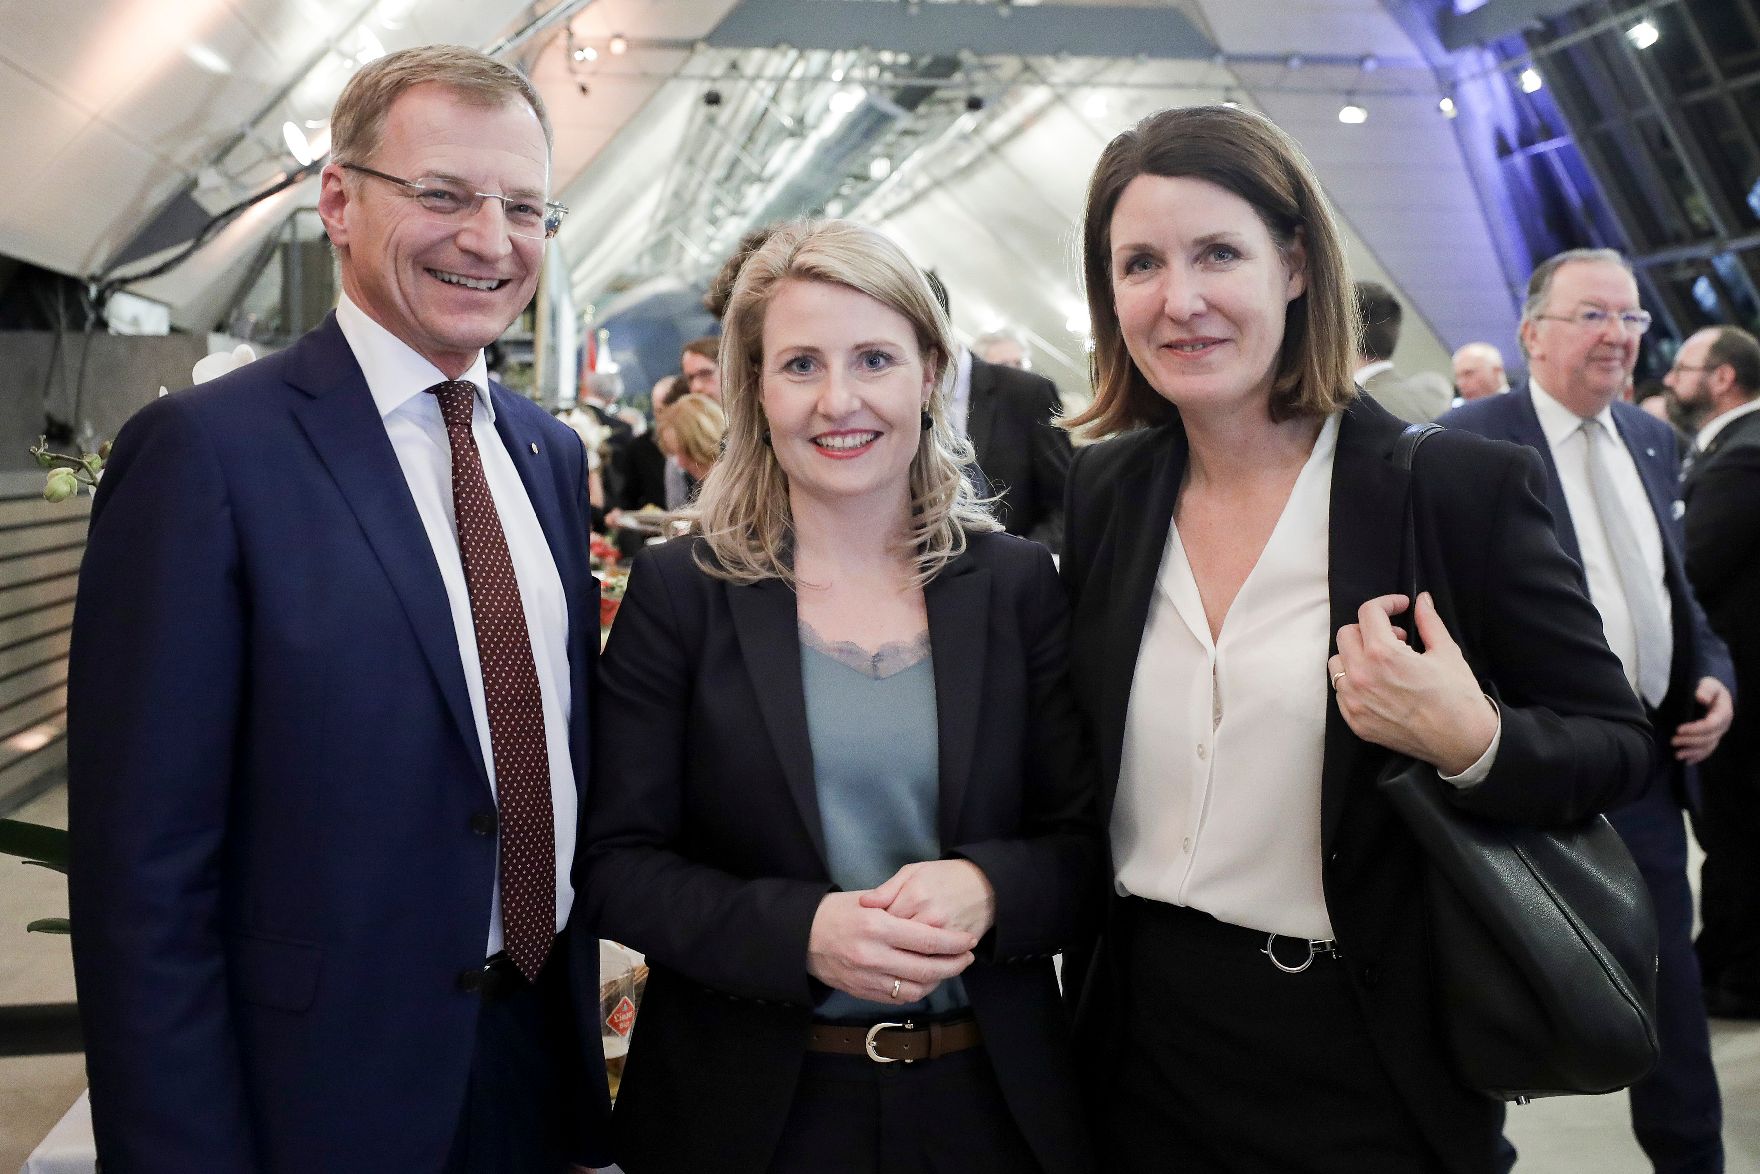 Am 12. Februar 2020 nahm Bundesministerin Susanne Raab (m.) am Empfang zur Vorsitzübernahme des Landes Oberösterreich im Bundesrat teil. Im Bild mit Landeshauptmann Thomas Stelzer (l.).